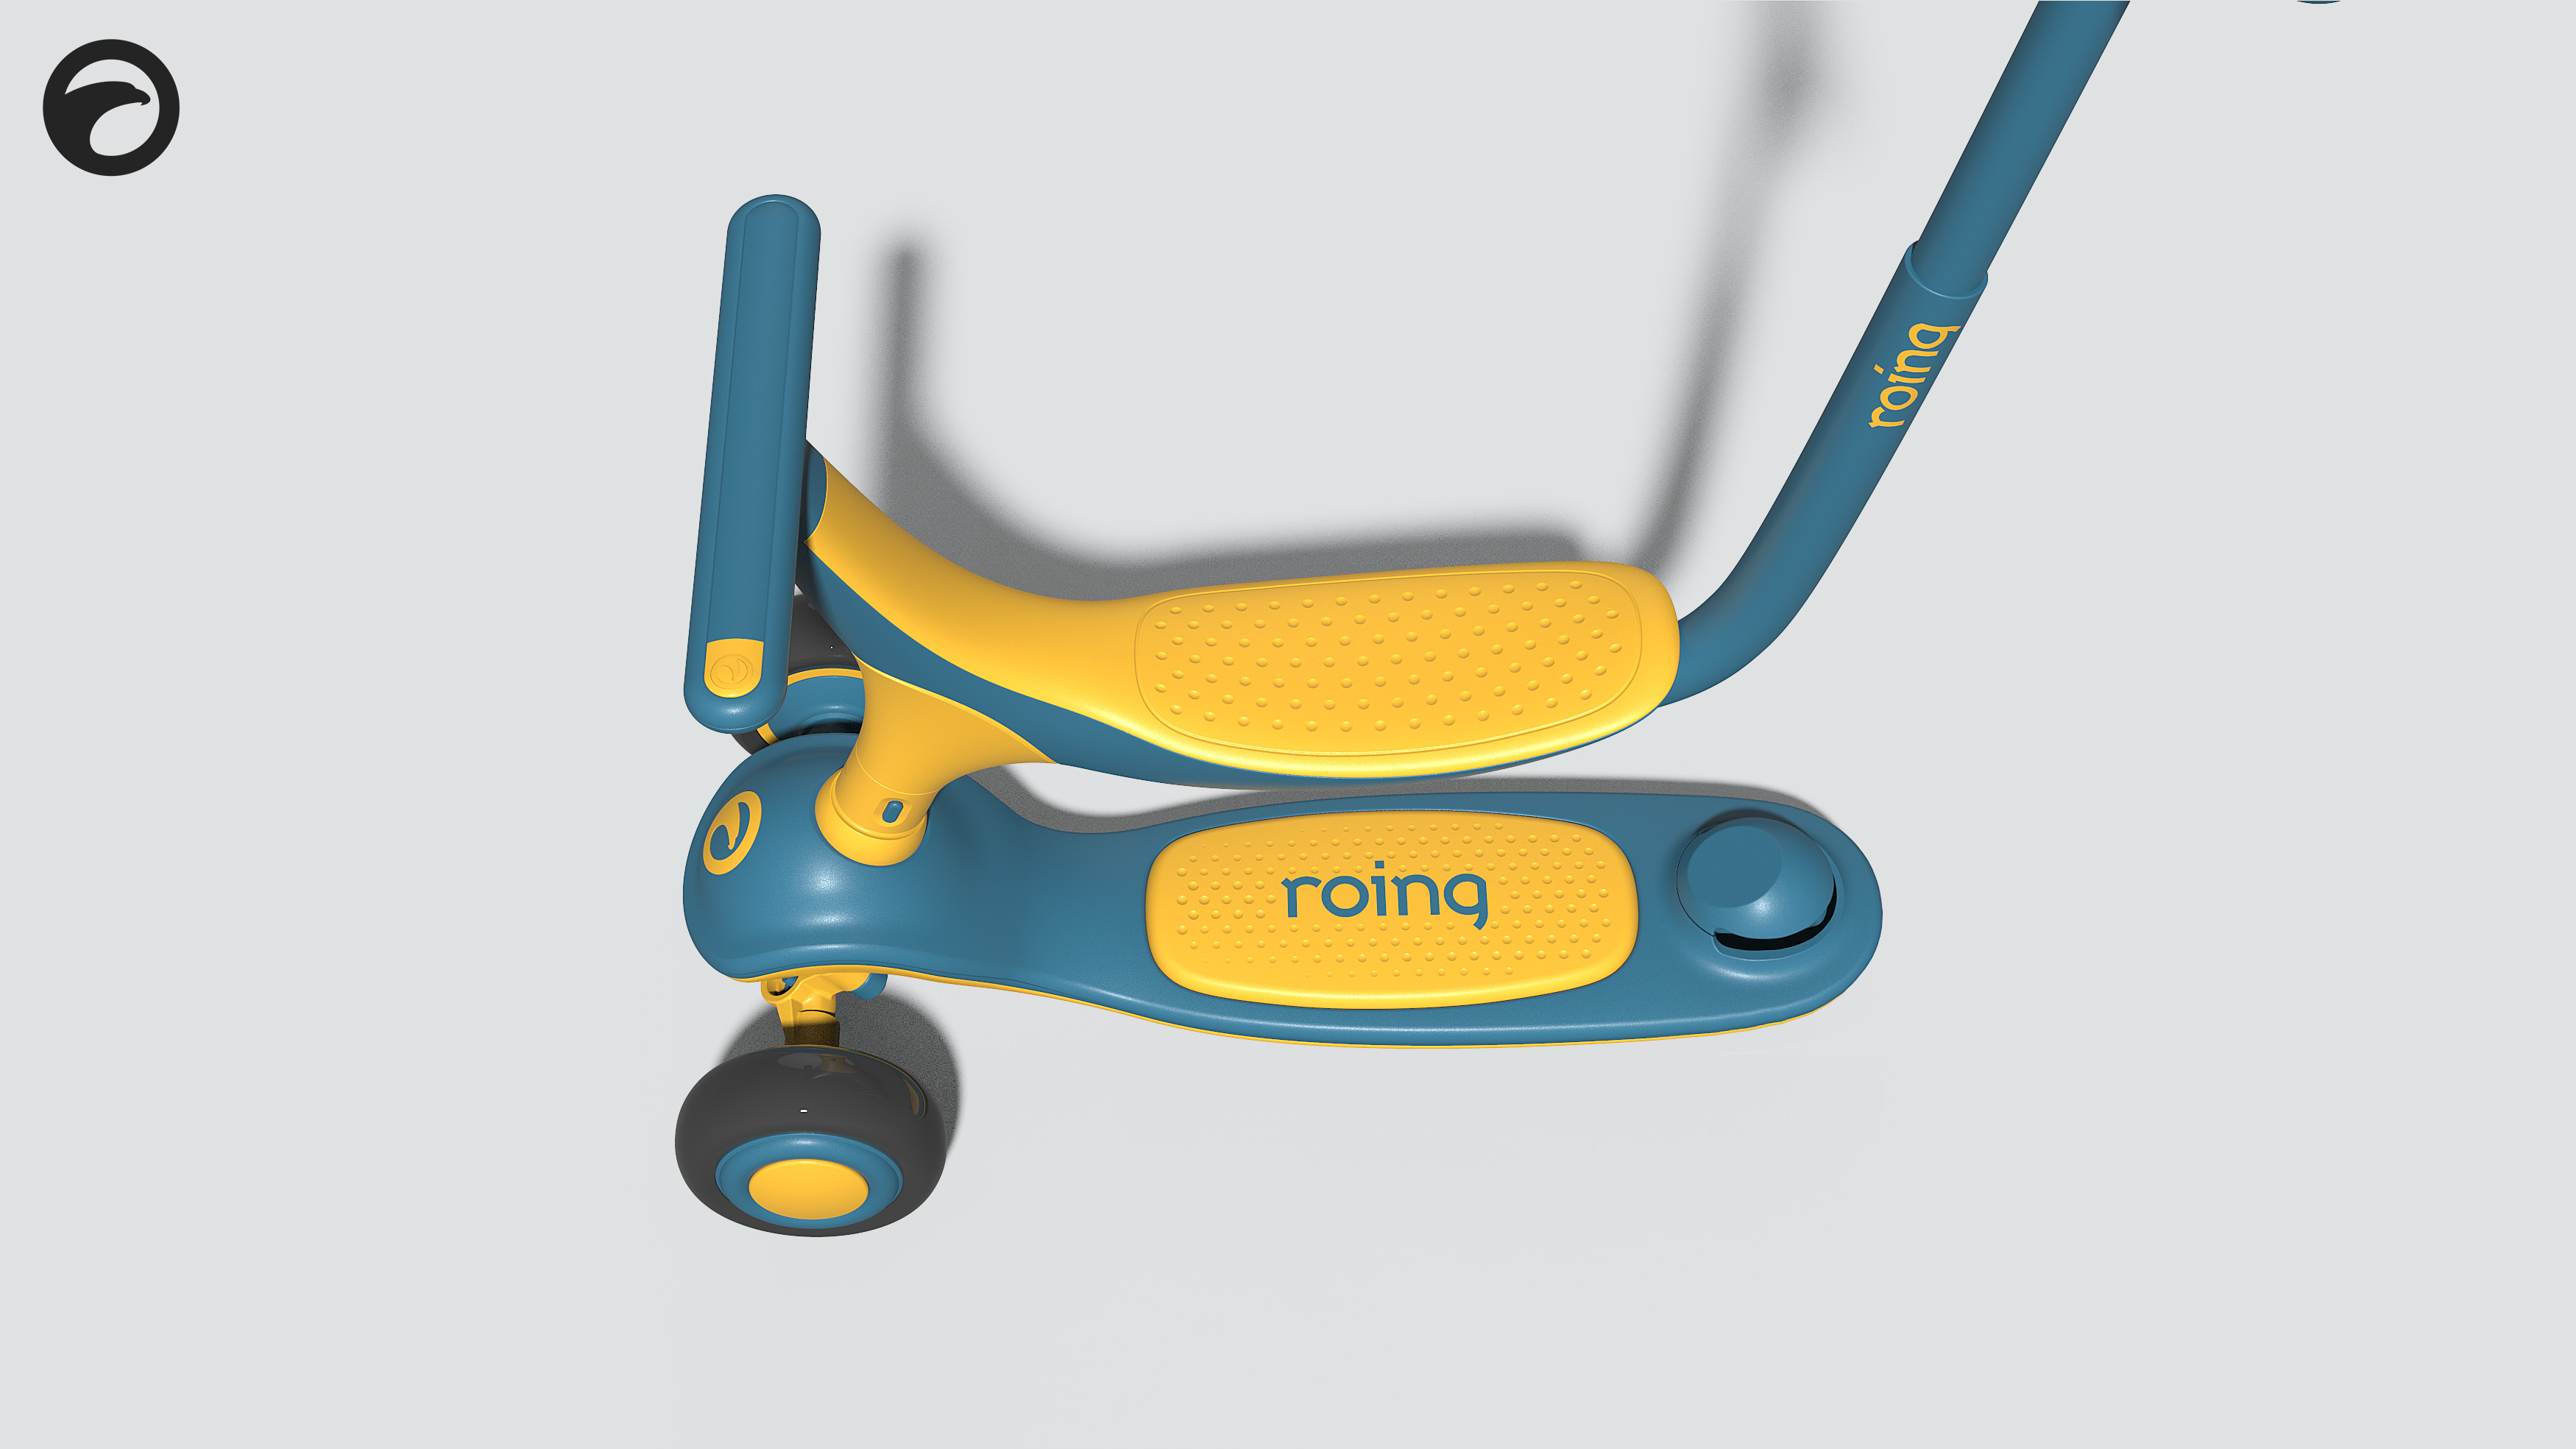 哈士奇设计作品 - 儿童功能滑板车